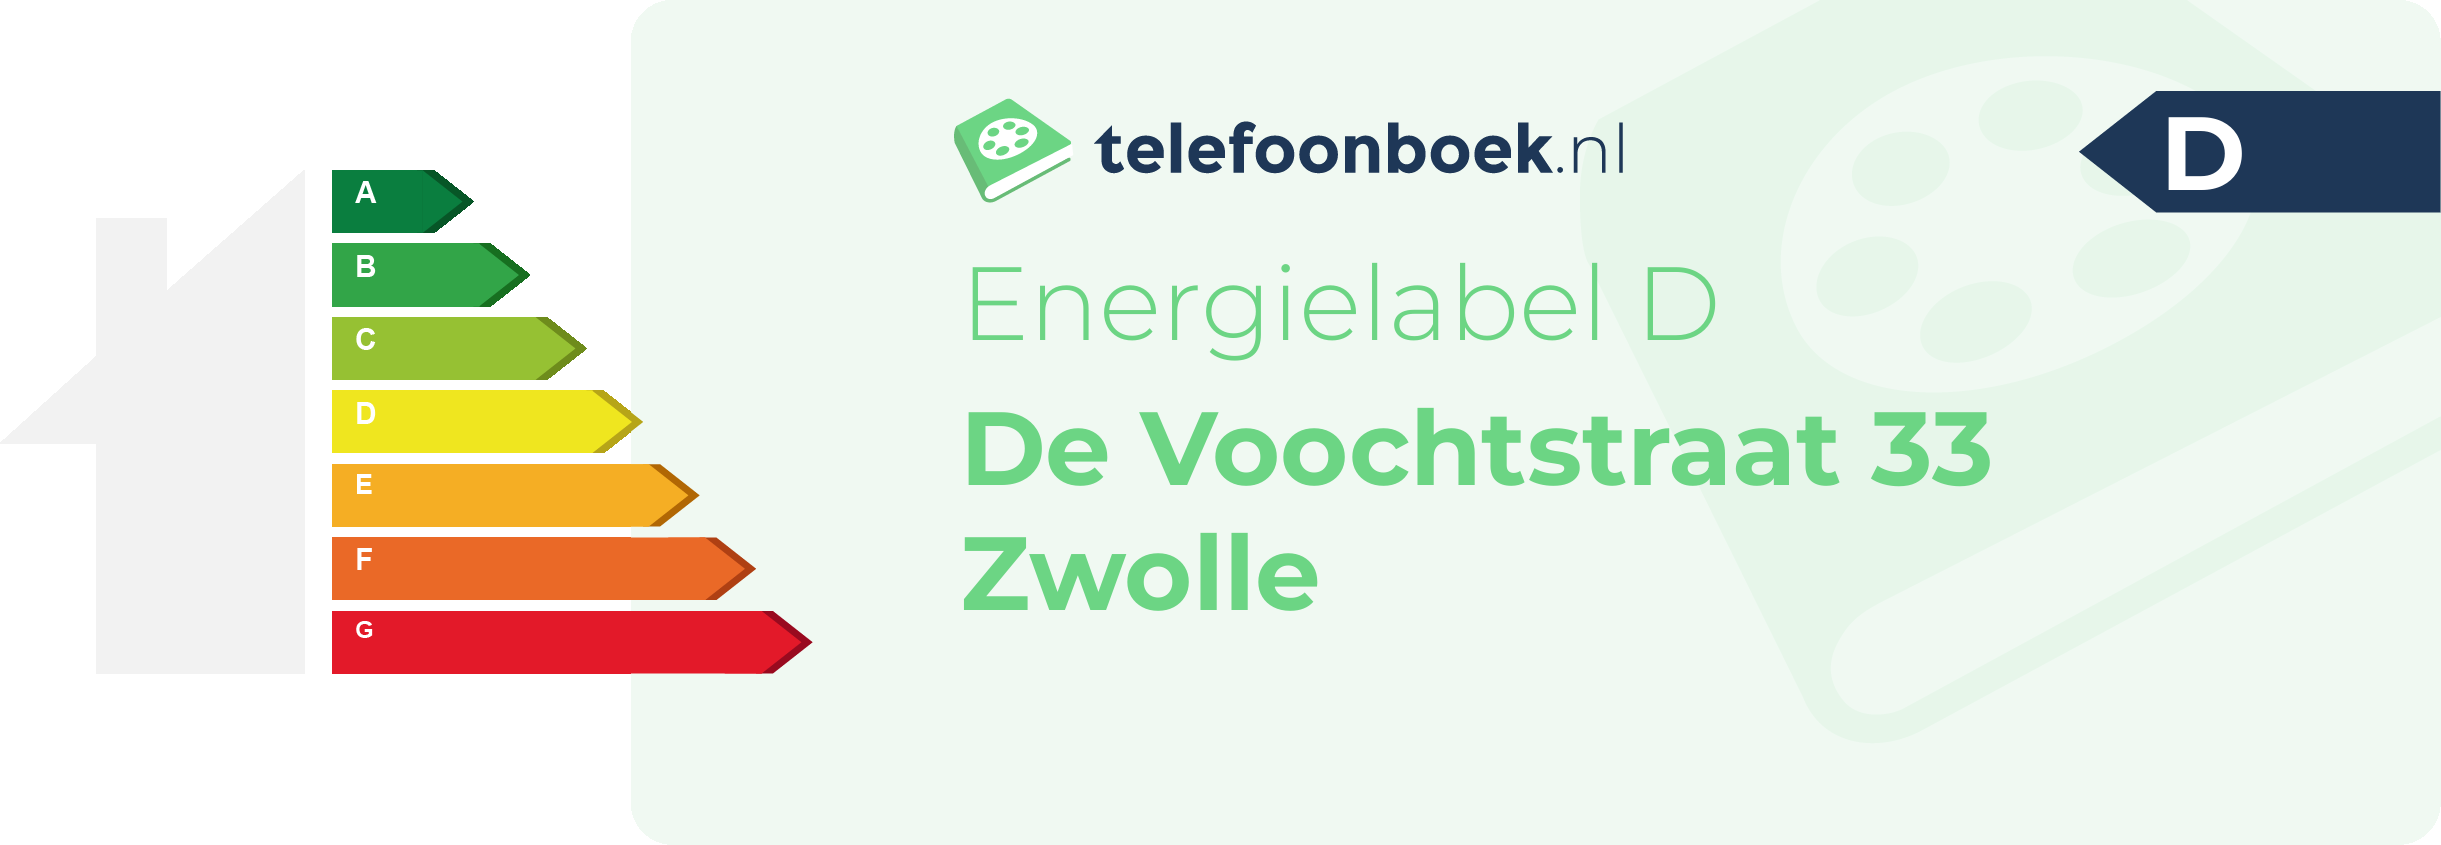 Energielabel De Voochtstraat 33 Zwolle